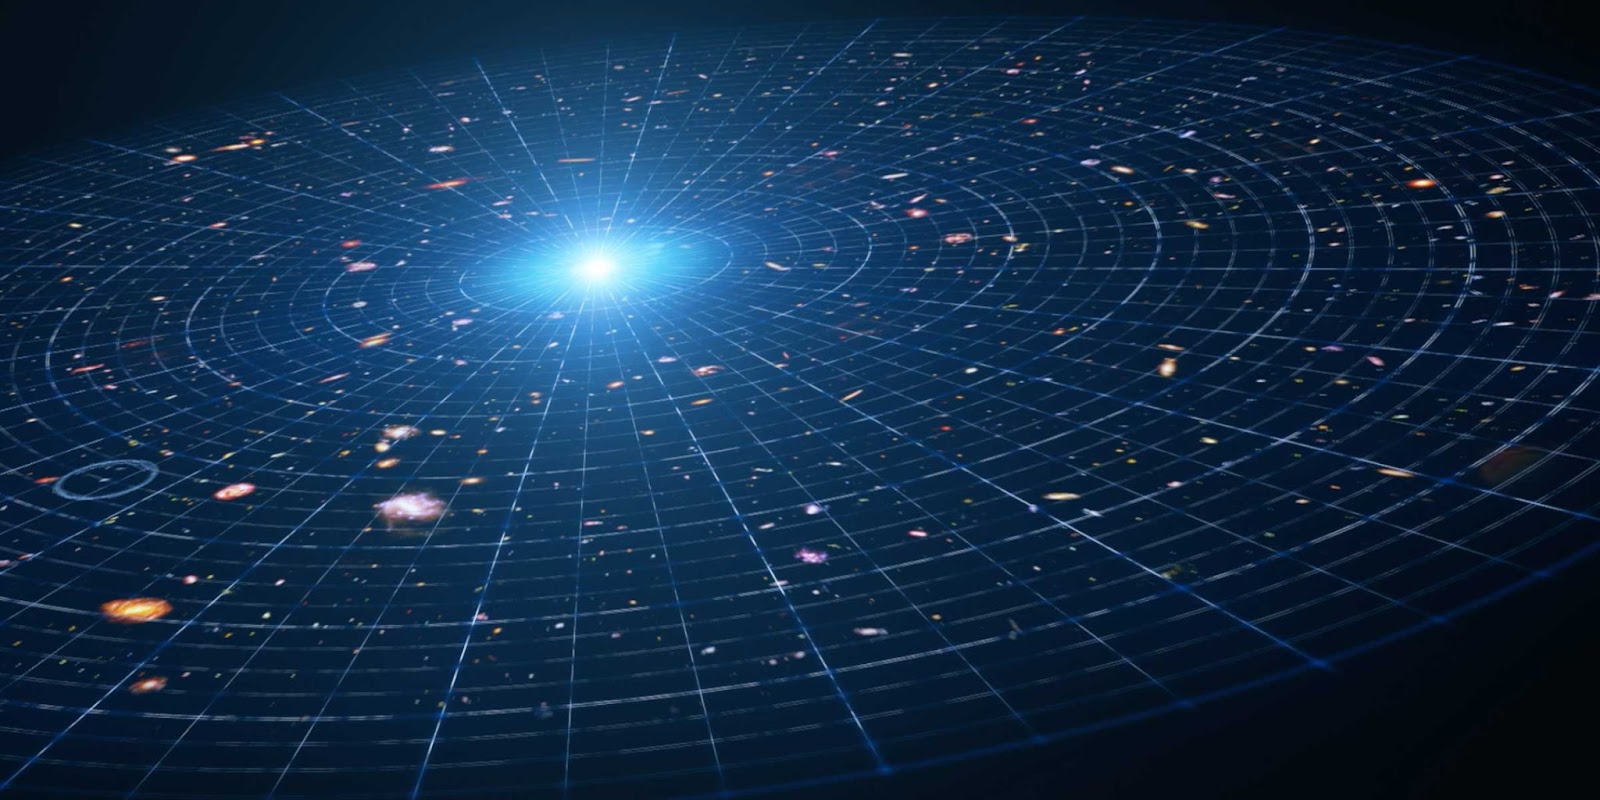 Universe with Dark Energy